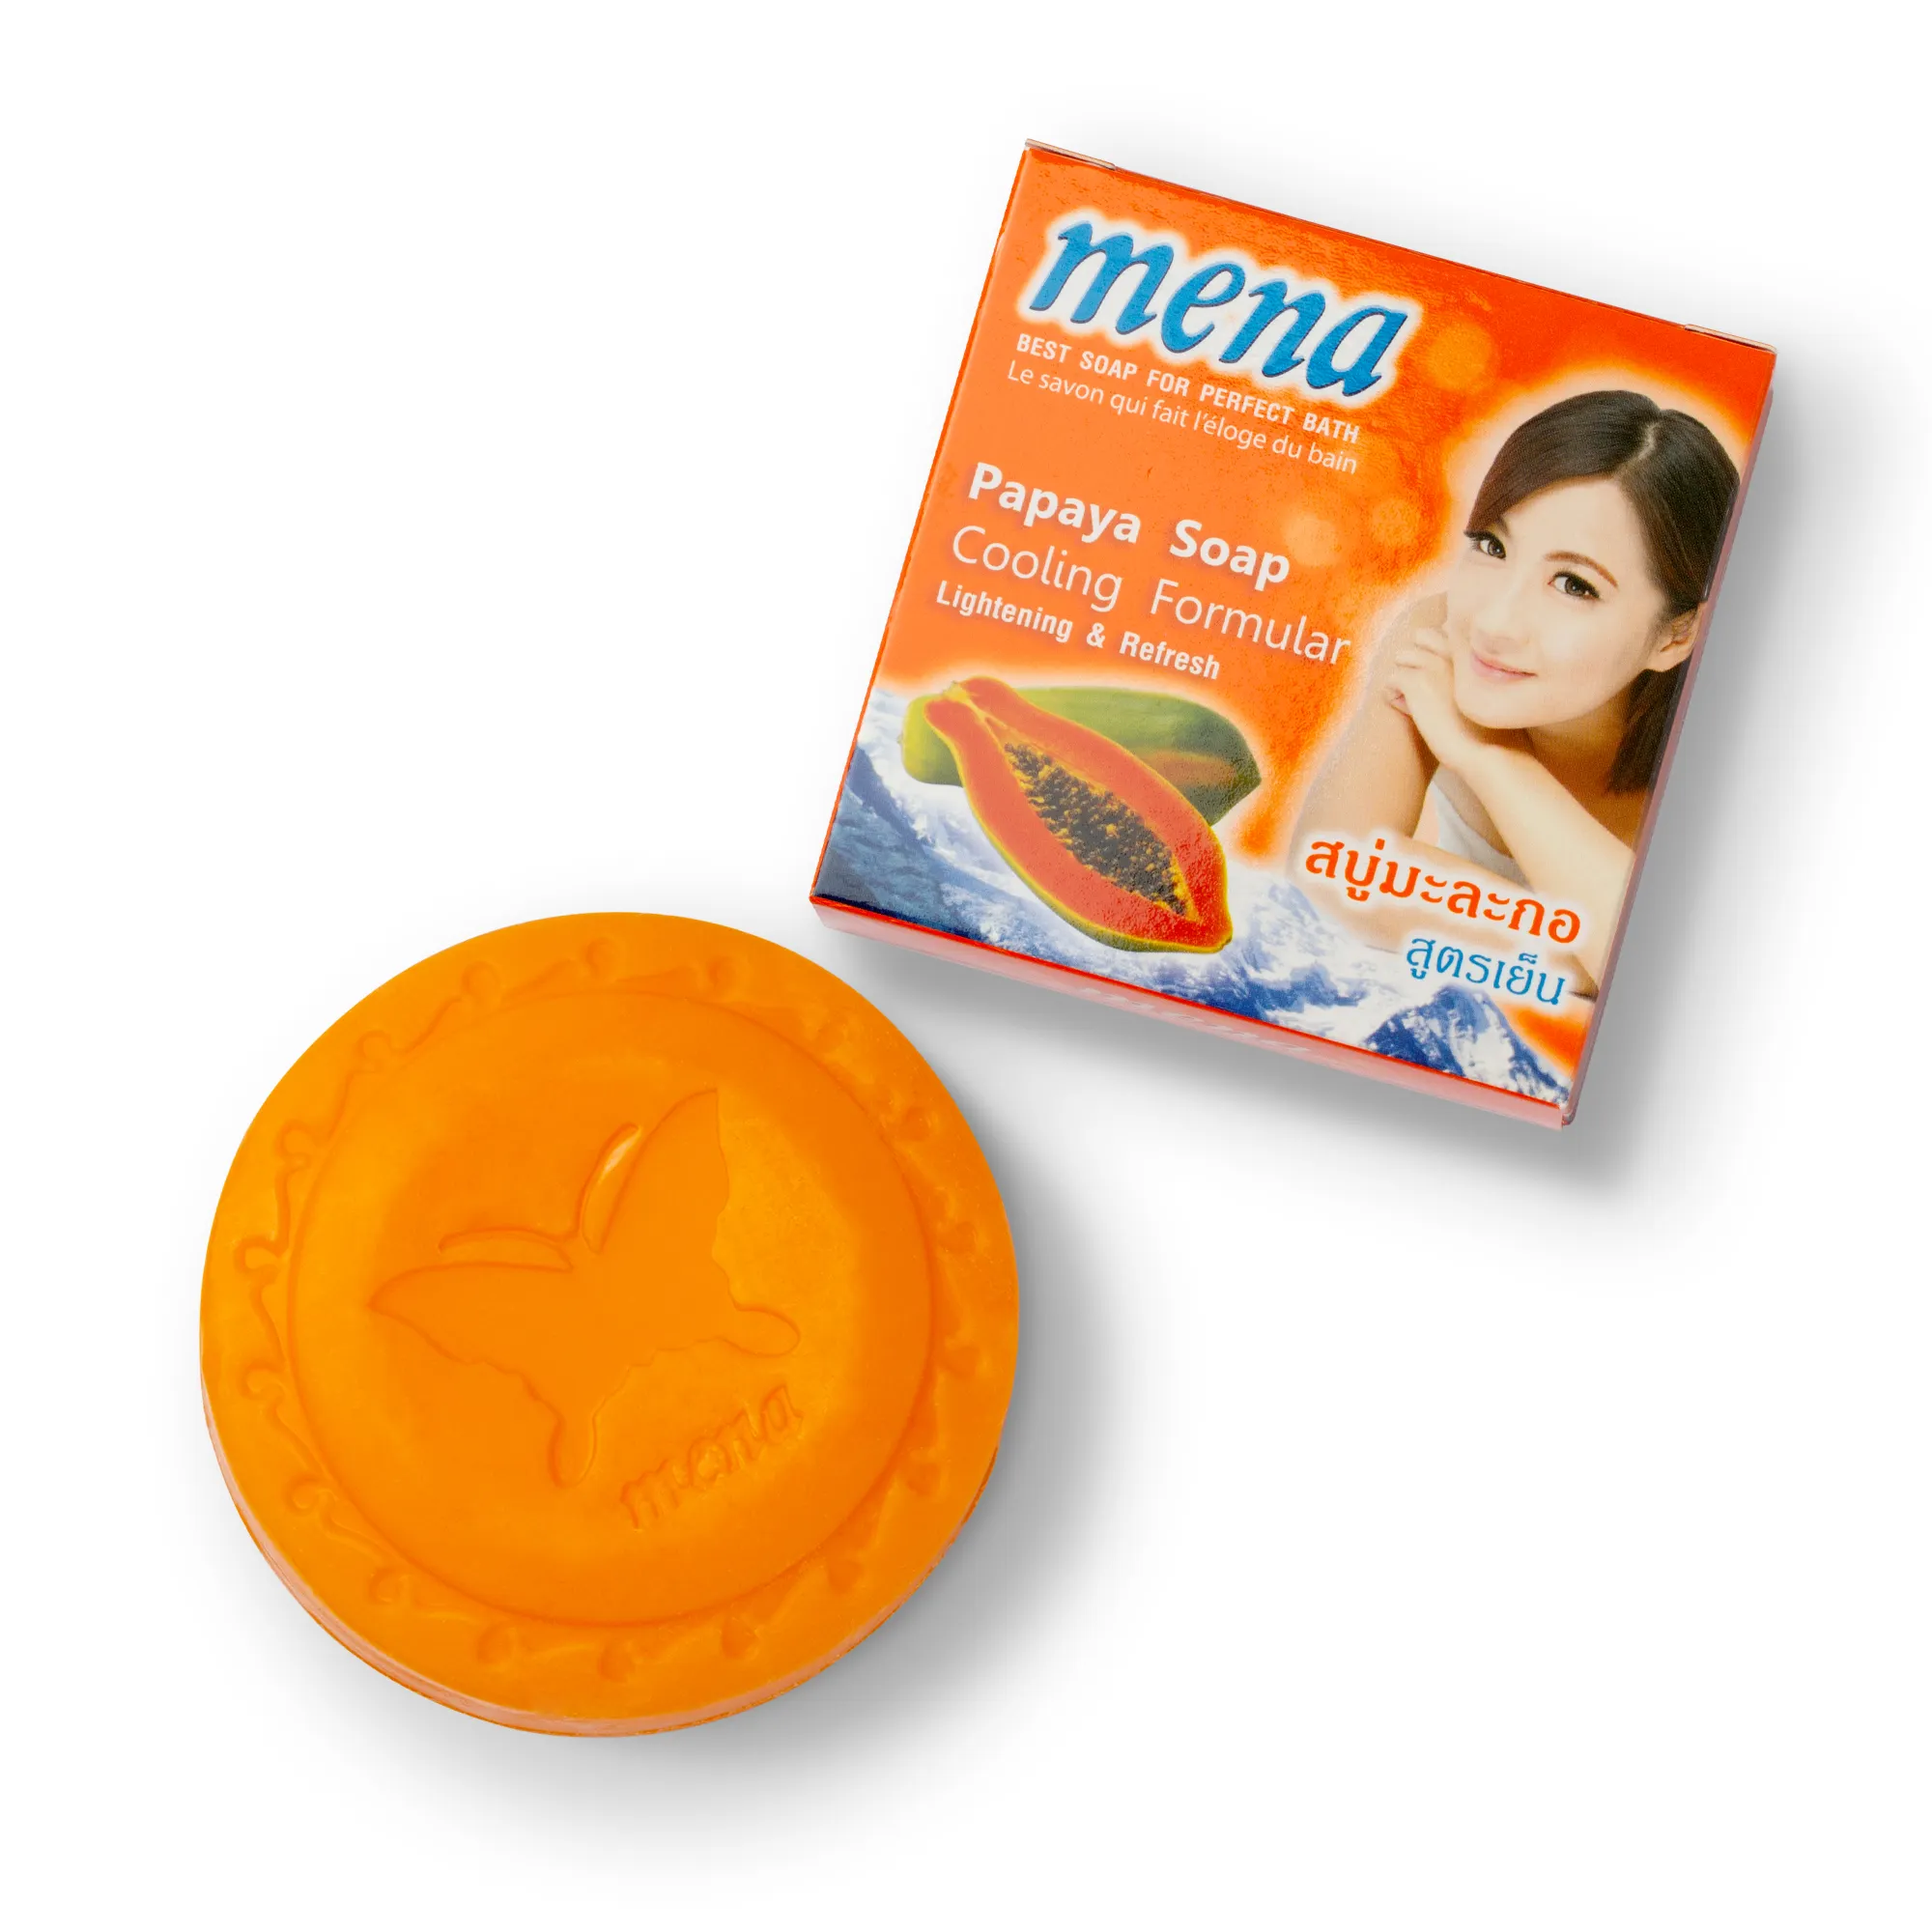 Mena sabonete ultra: papaia com efeito de resfriamento para clareamento da pele este é o melhor sabonete vendedor